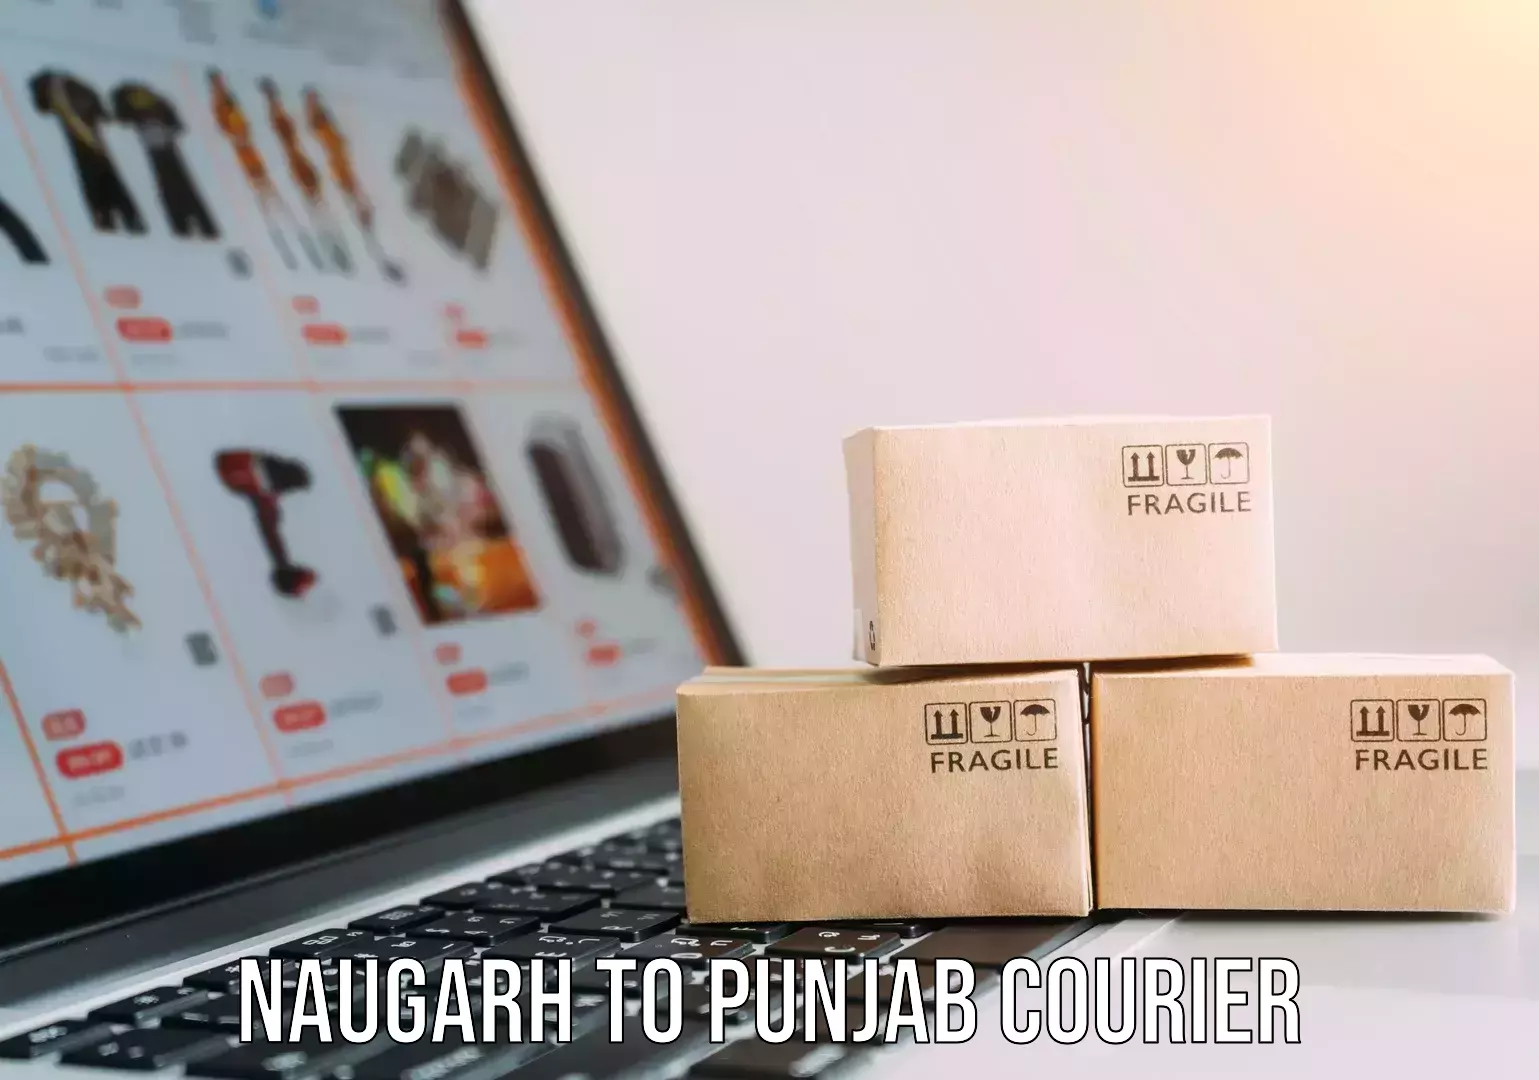 Furniture moving plans Naugarh to Punjab